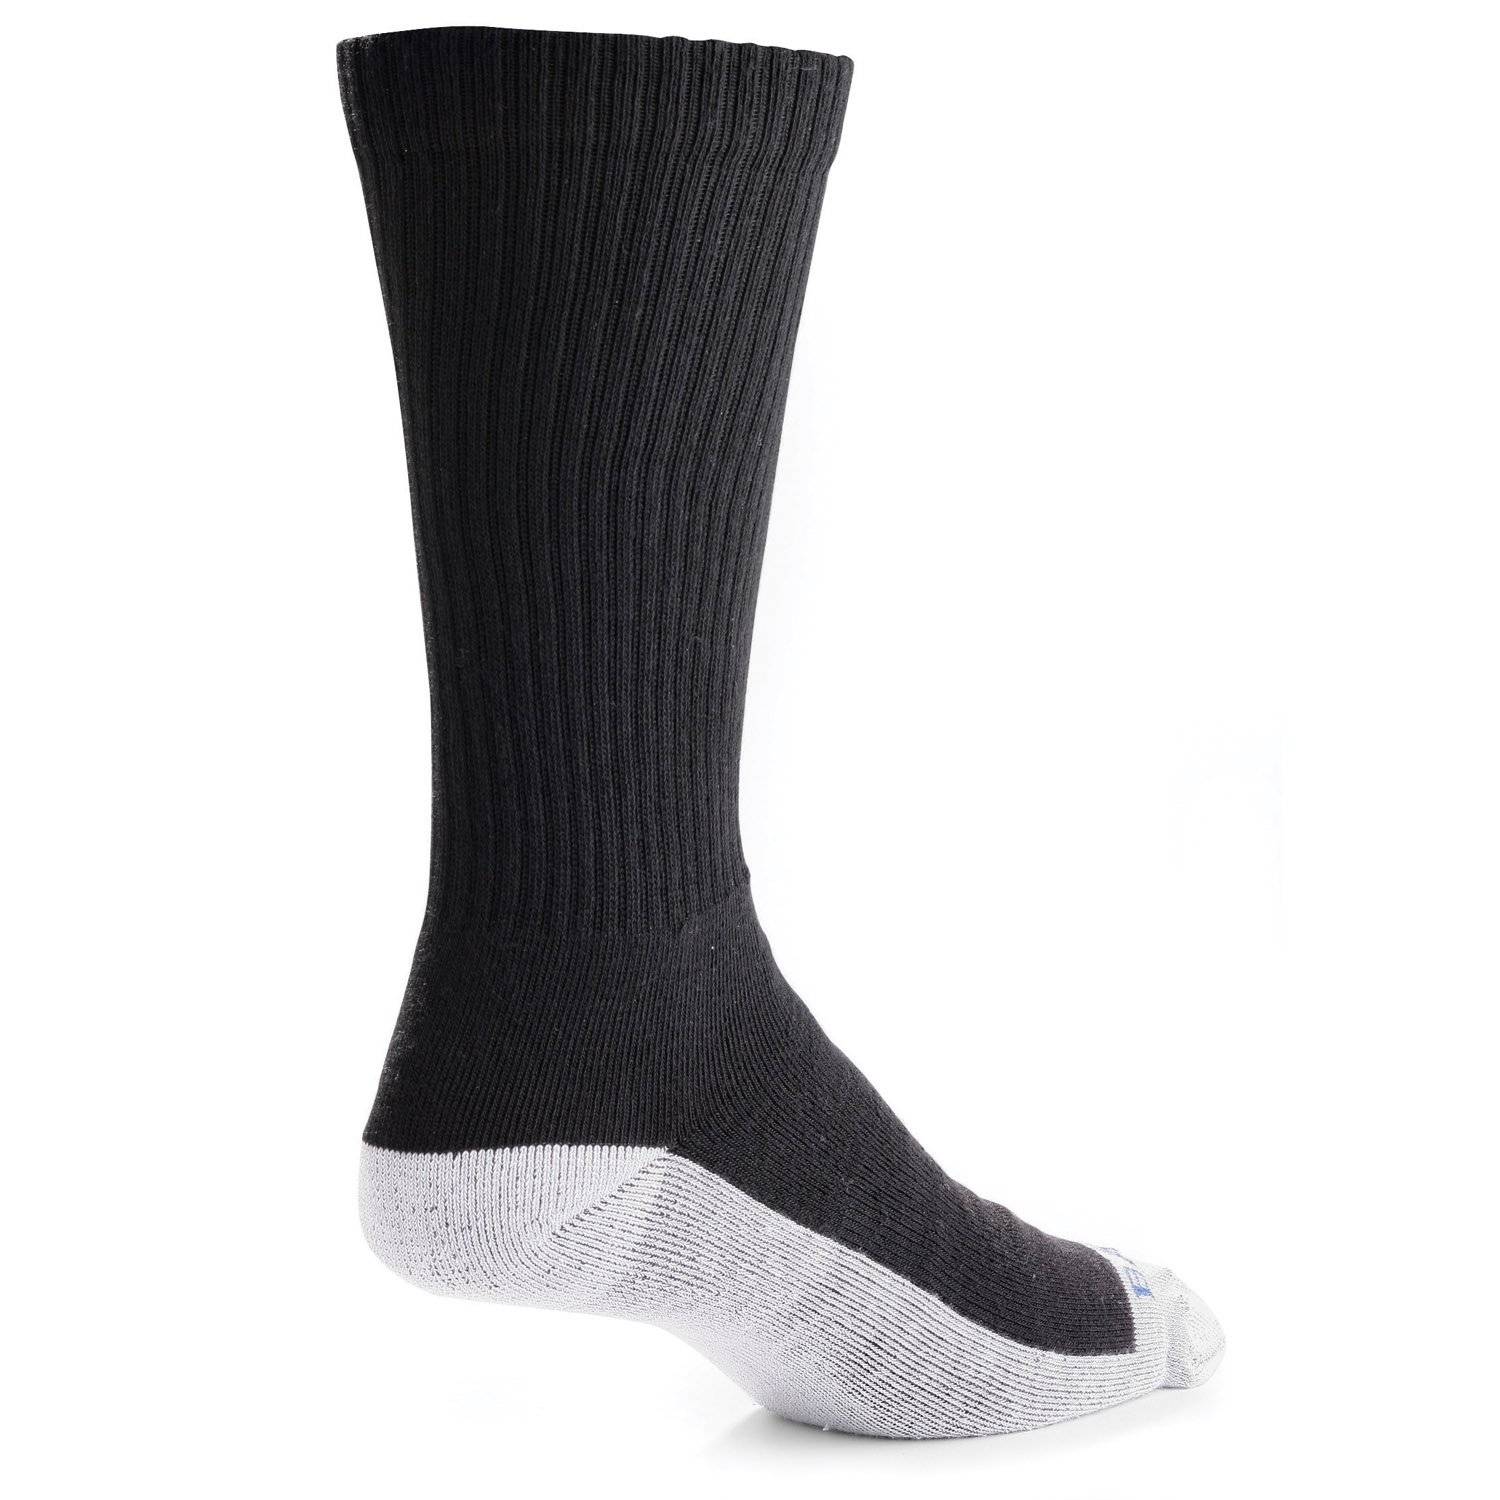 Bates Tactical Mid Calf Uniform Socks